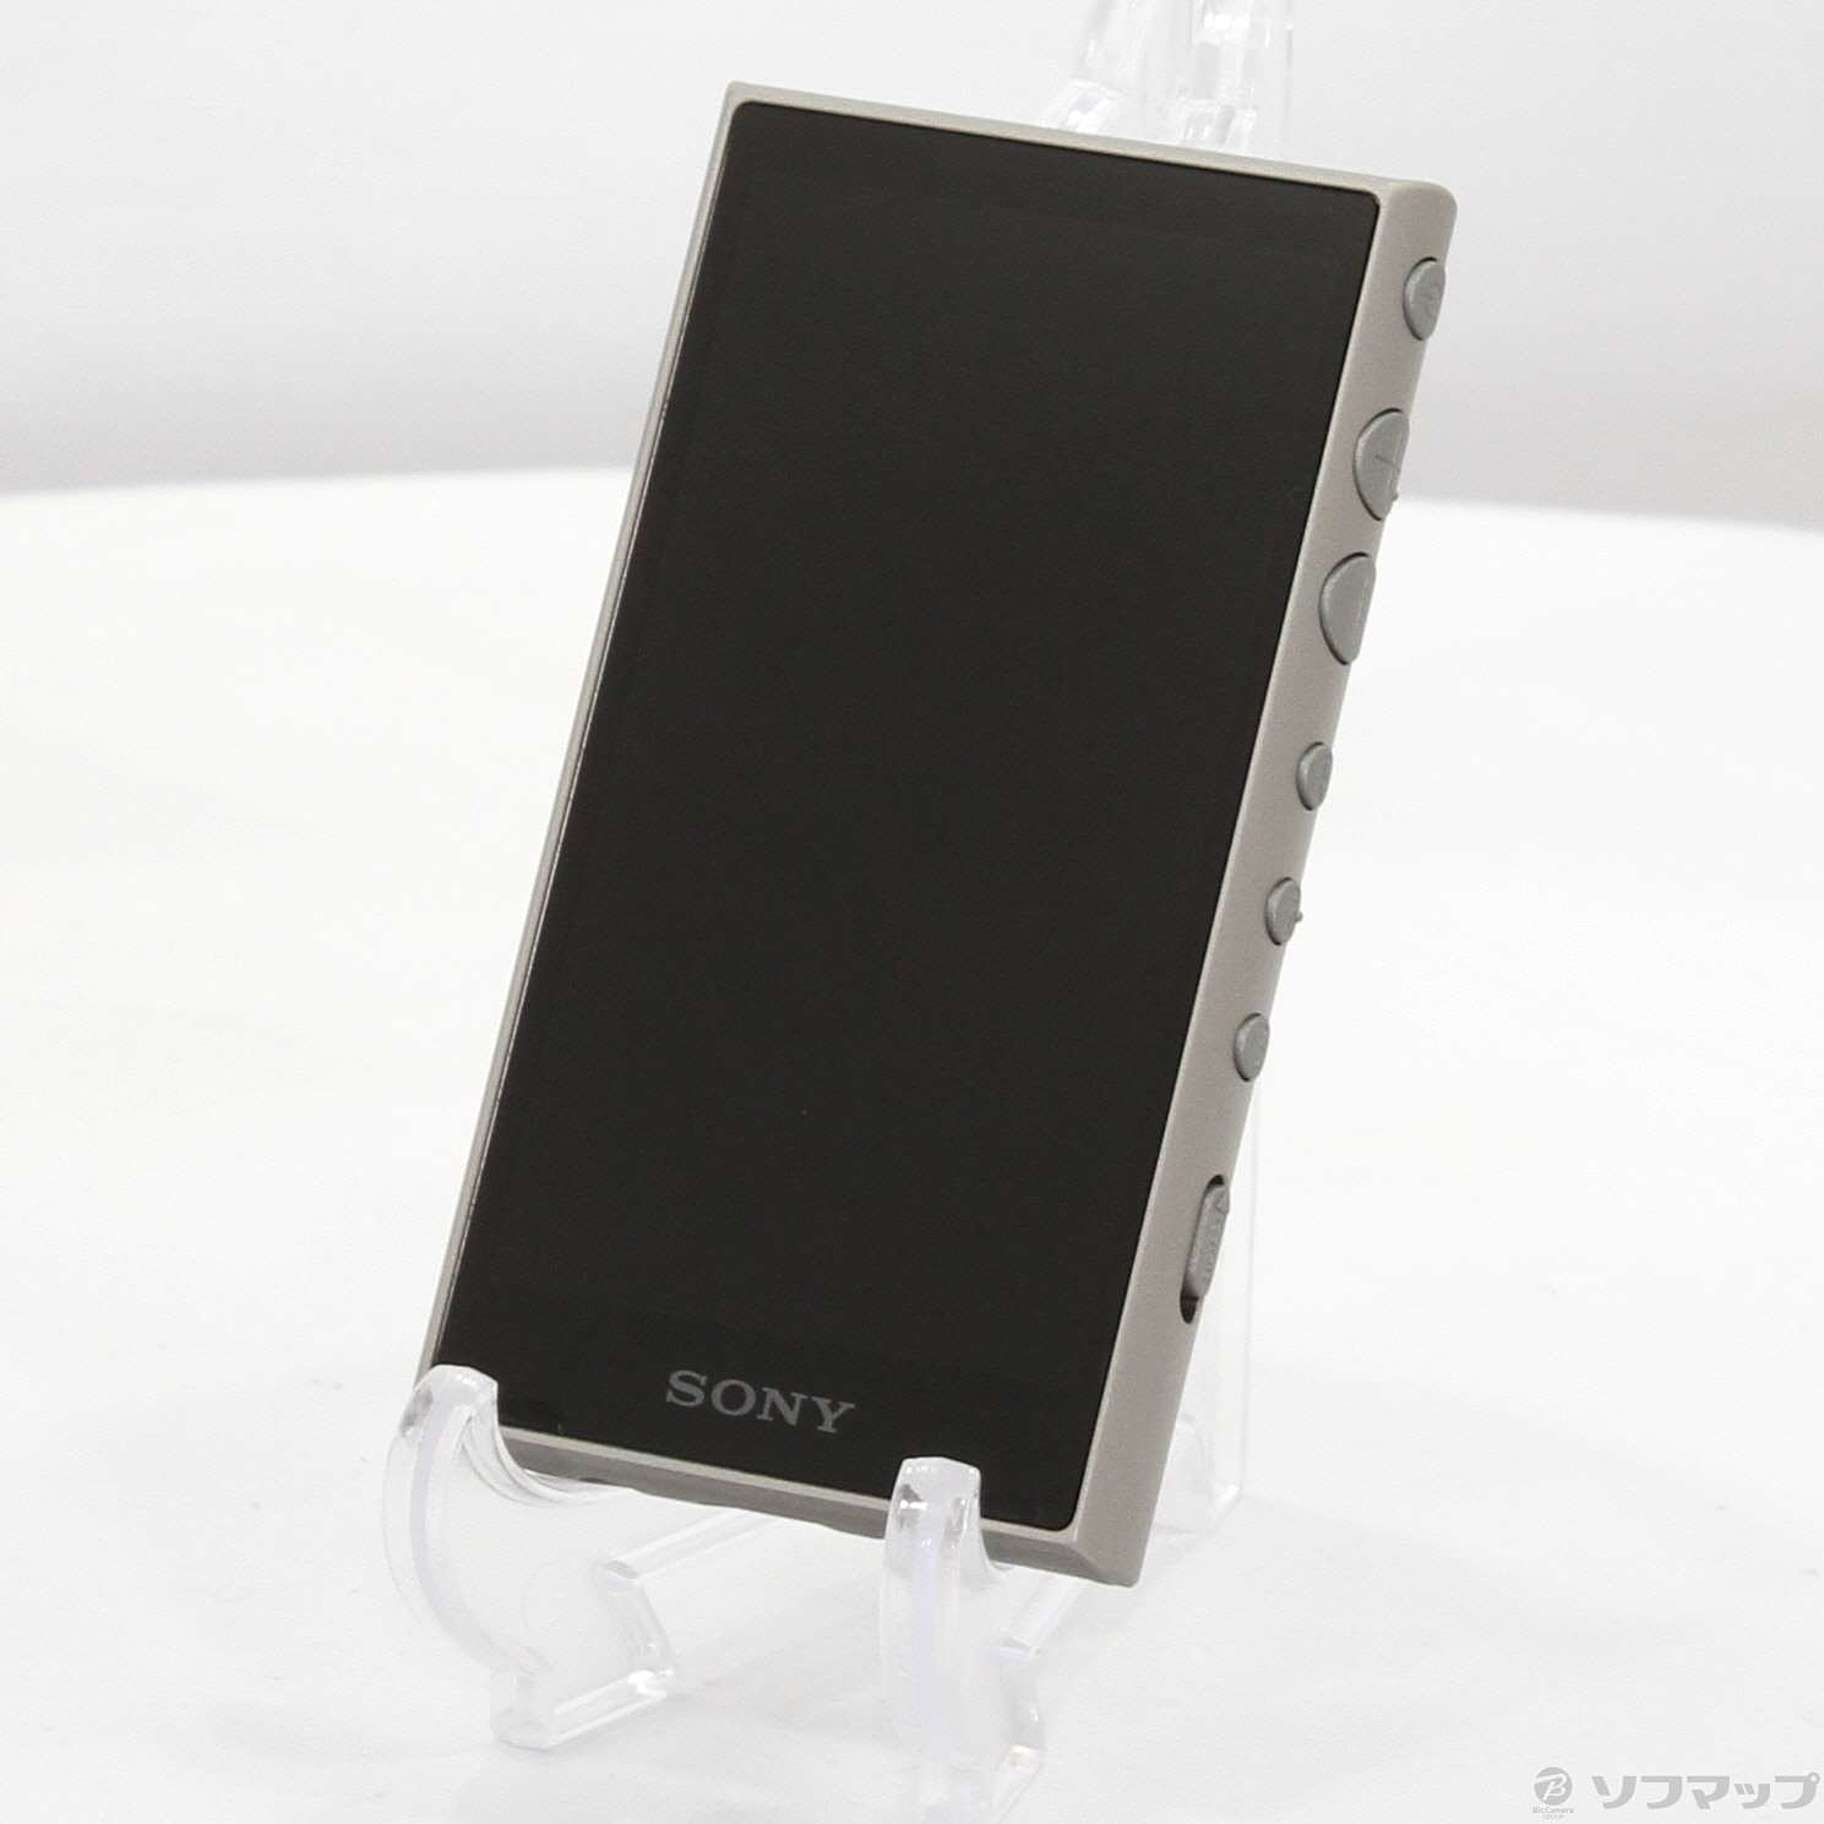 (中古)SONY WALKMAN A100シリーズ メモリ16GB+microSD アッシュグリーン NW-A105 G(262-ud)